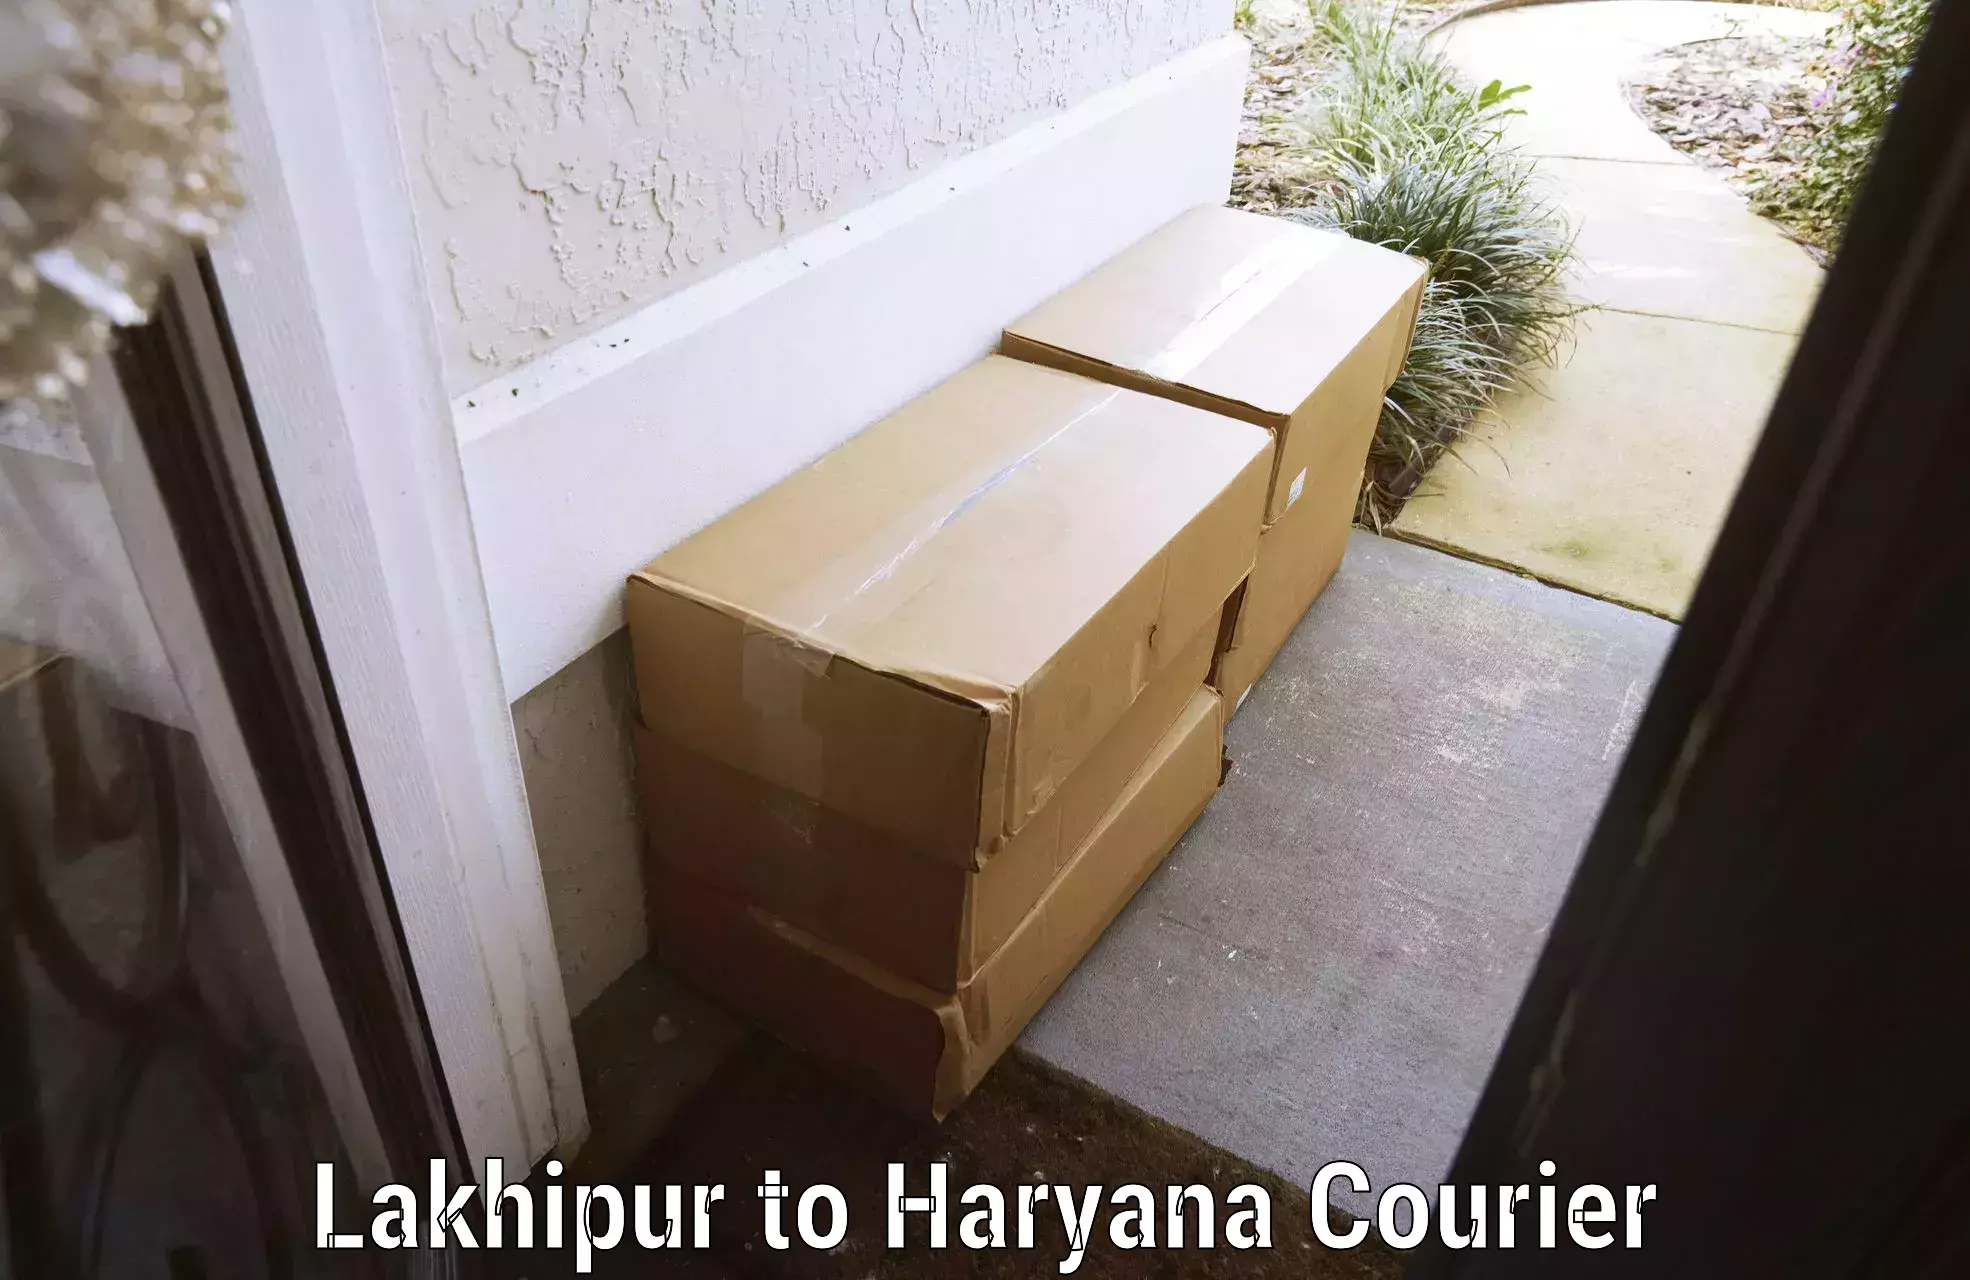 Baggage shipping experts Lakhipur to Haryana